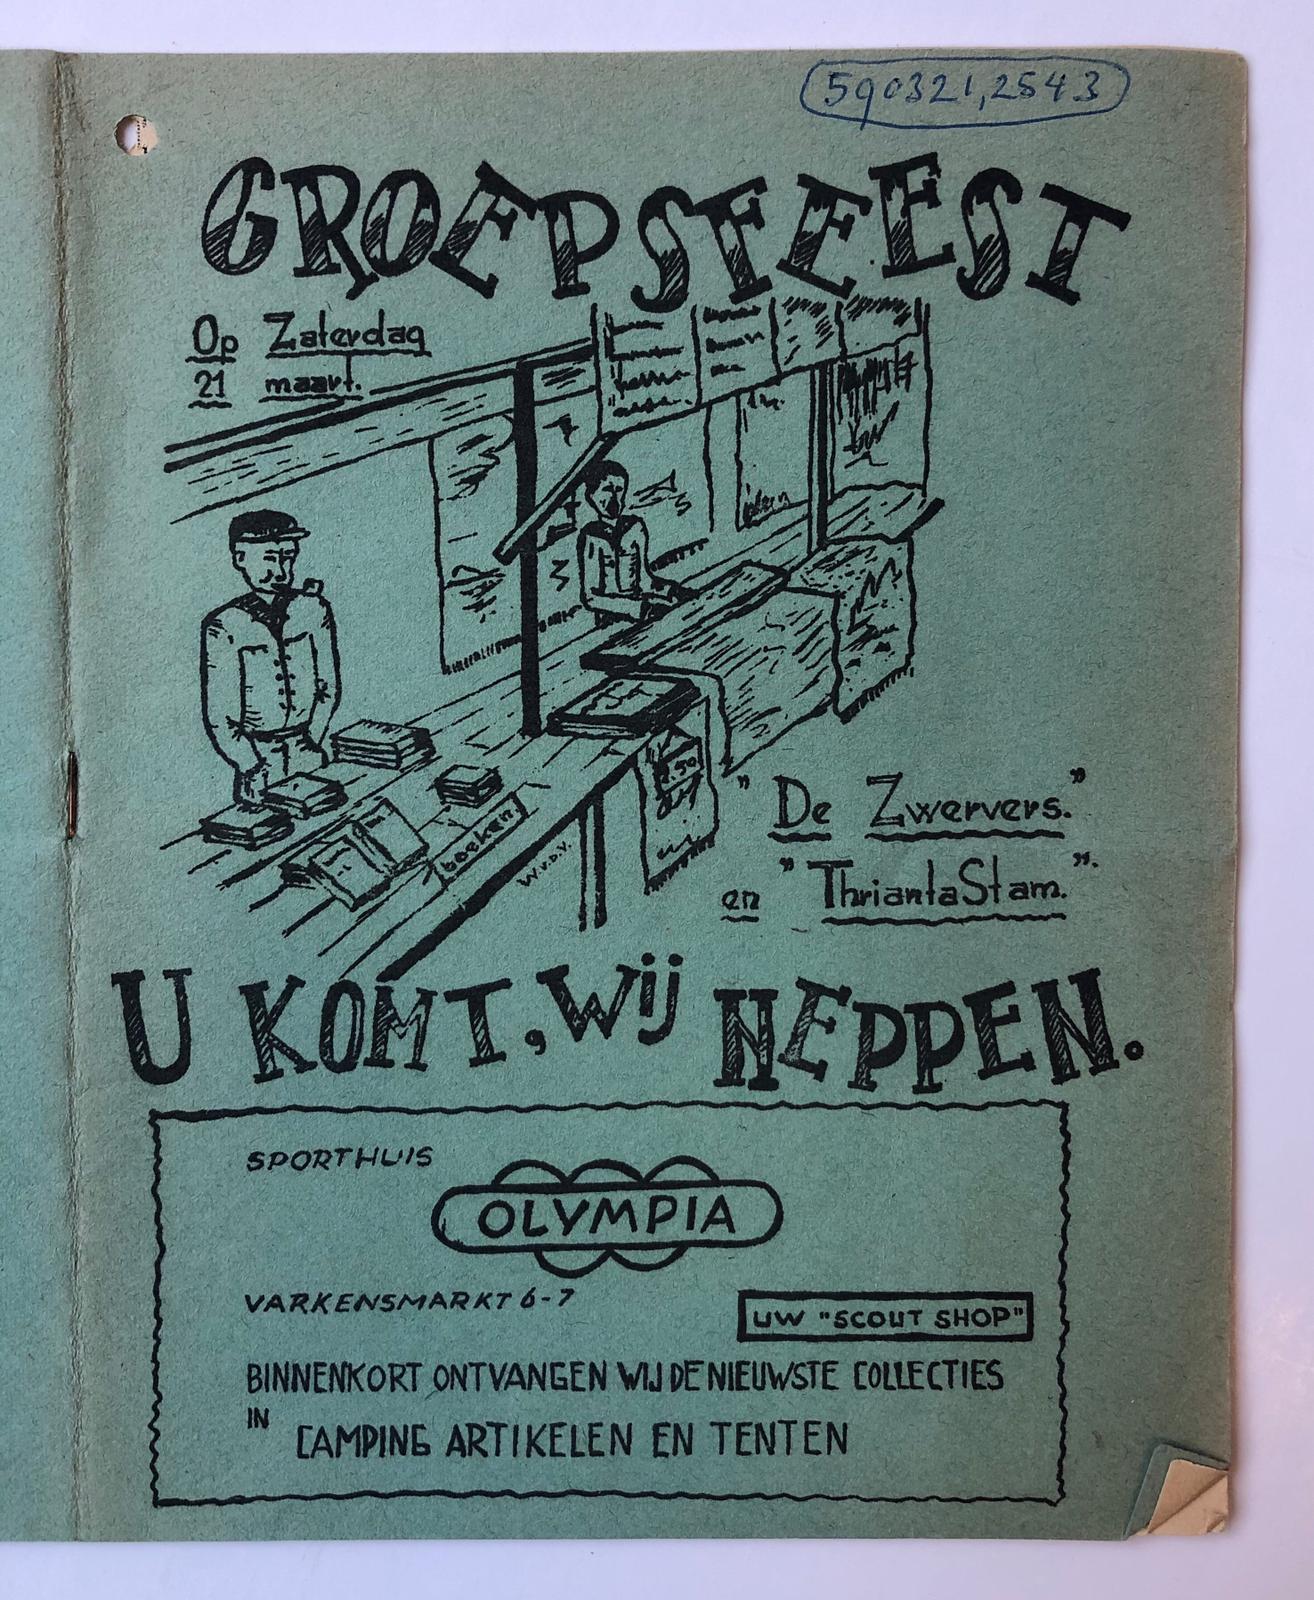  - [Private printed programm 1950] Programma van groepsfeest van De Zwervers en Thrianta Stam te Assen, ca. 1950. Gestencild, 18 pag., met veel advertenties van plaatselijke winkeliers.